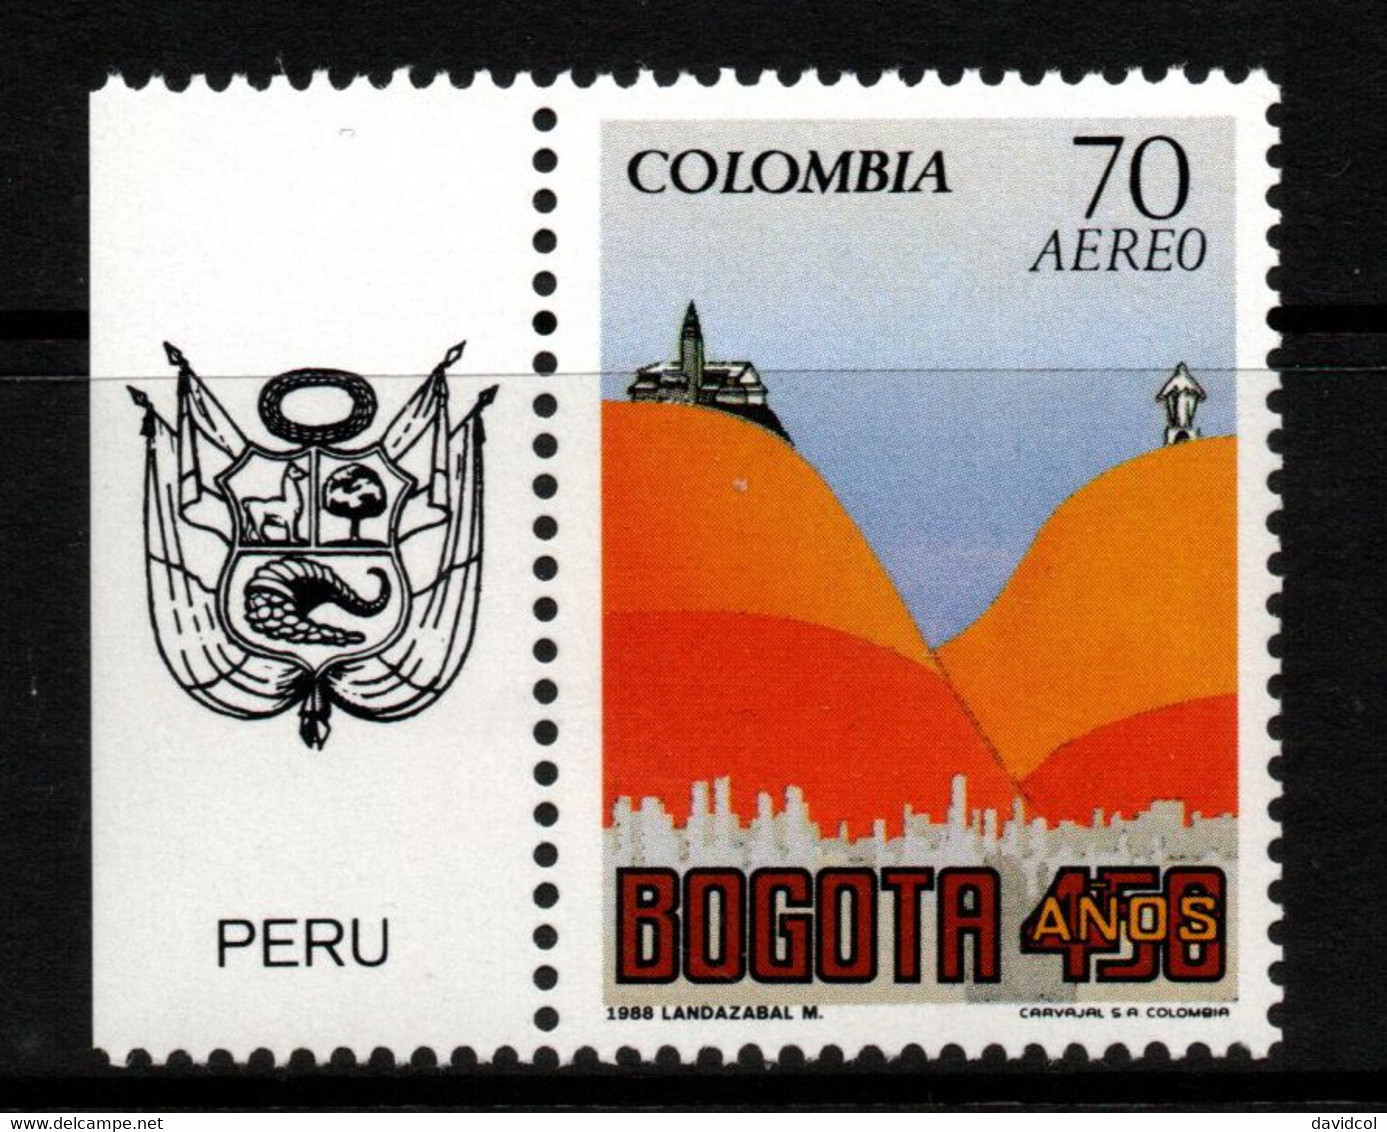 02G- KOLUMBIEN - 1988 - MI#:1717 - MNH- BOGOTA 450 YEARS – PERU COAT OF ARMS LABEL - Kolumbien